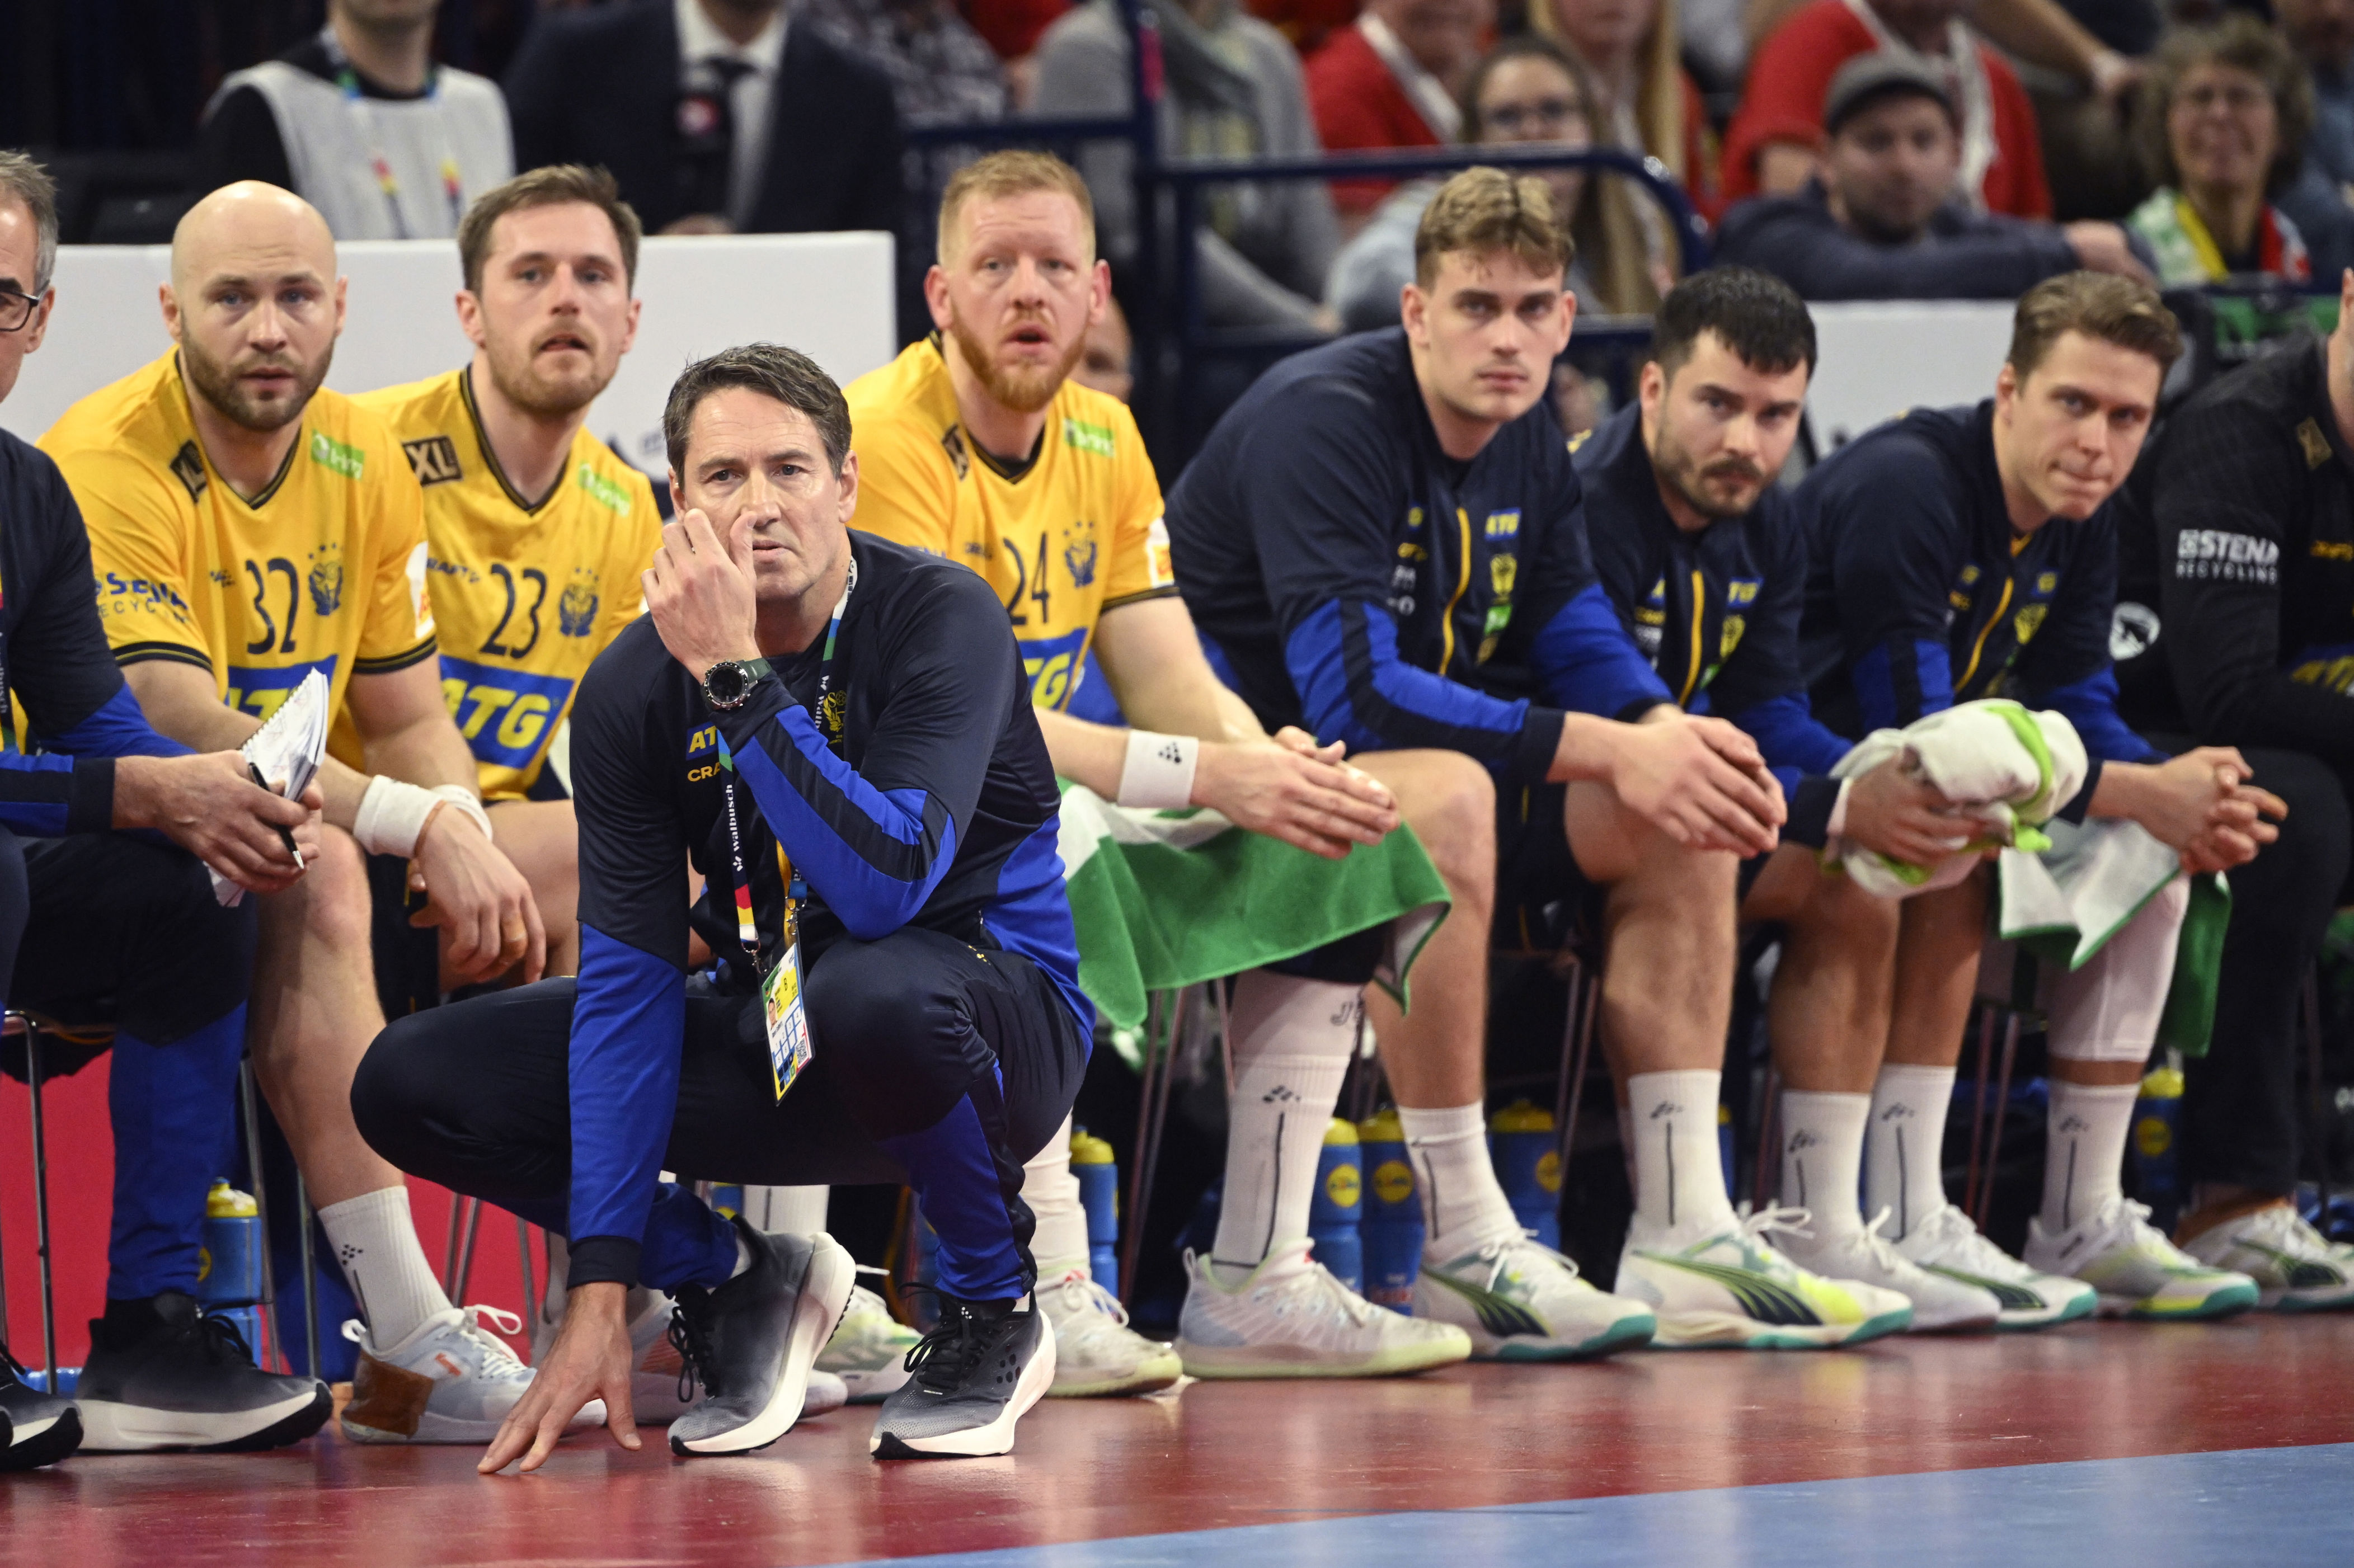 svensk em-seier over portugal – norge ikke ute av semifinalekampen